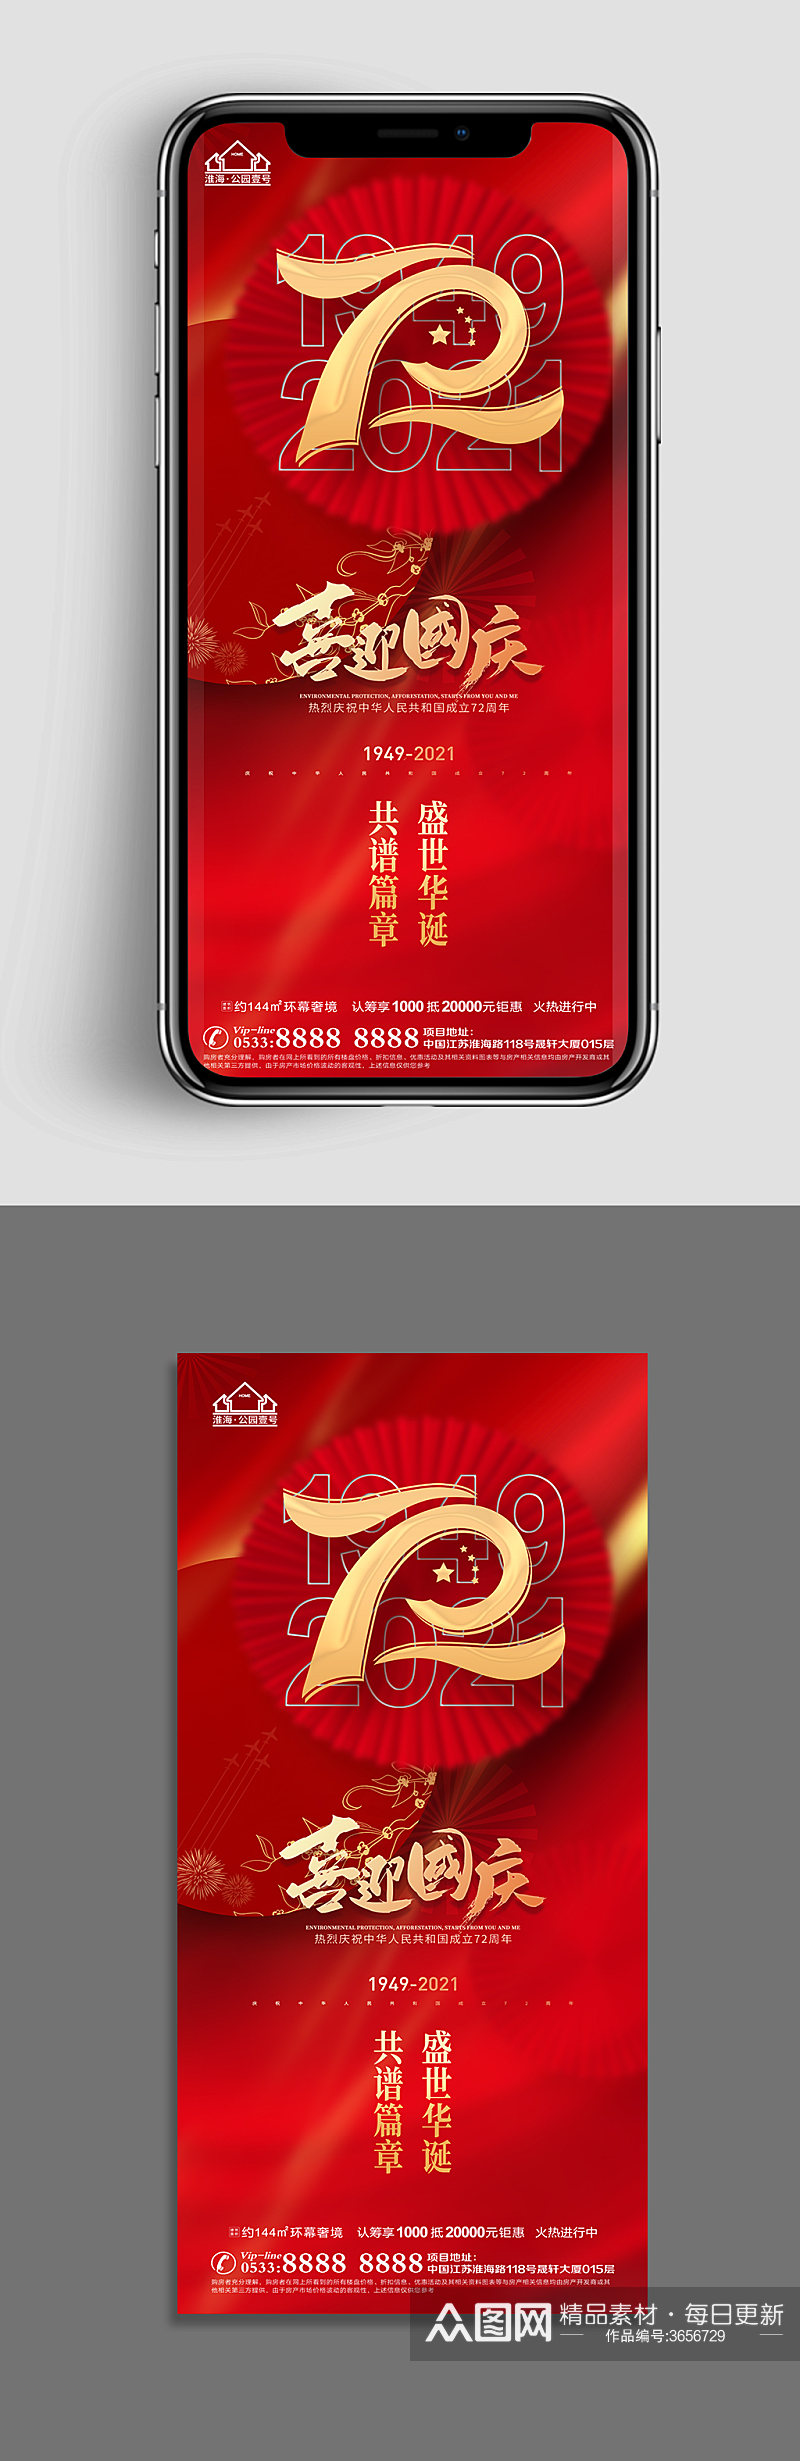 红色地产国庆节节日微信H5素材